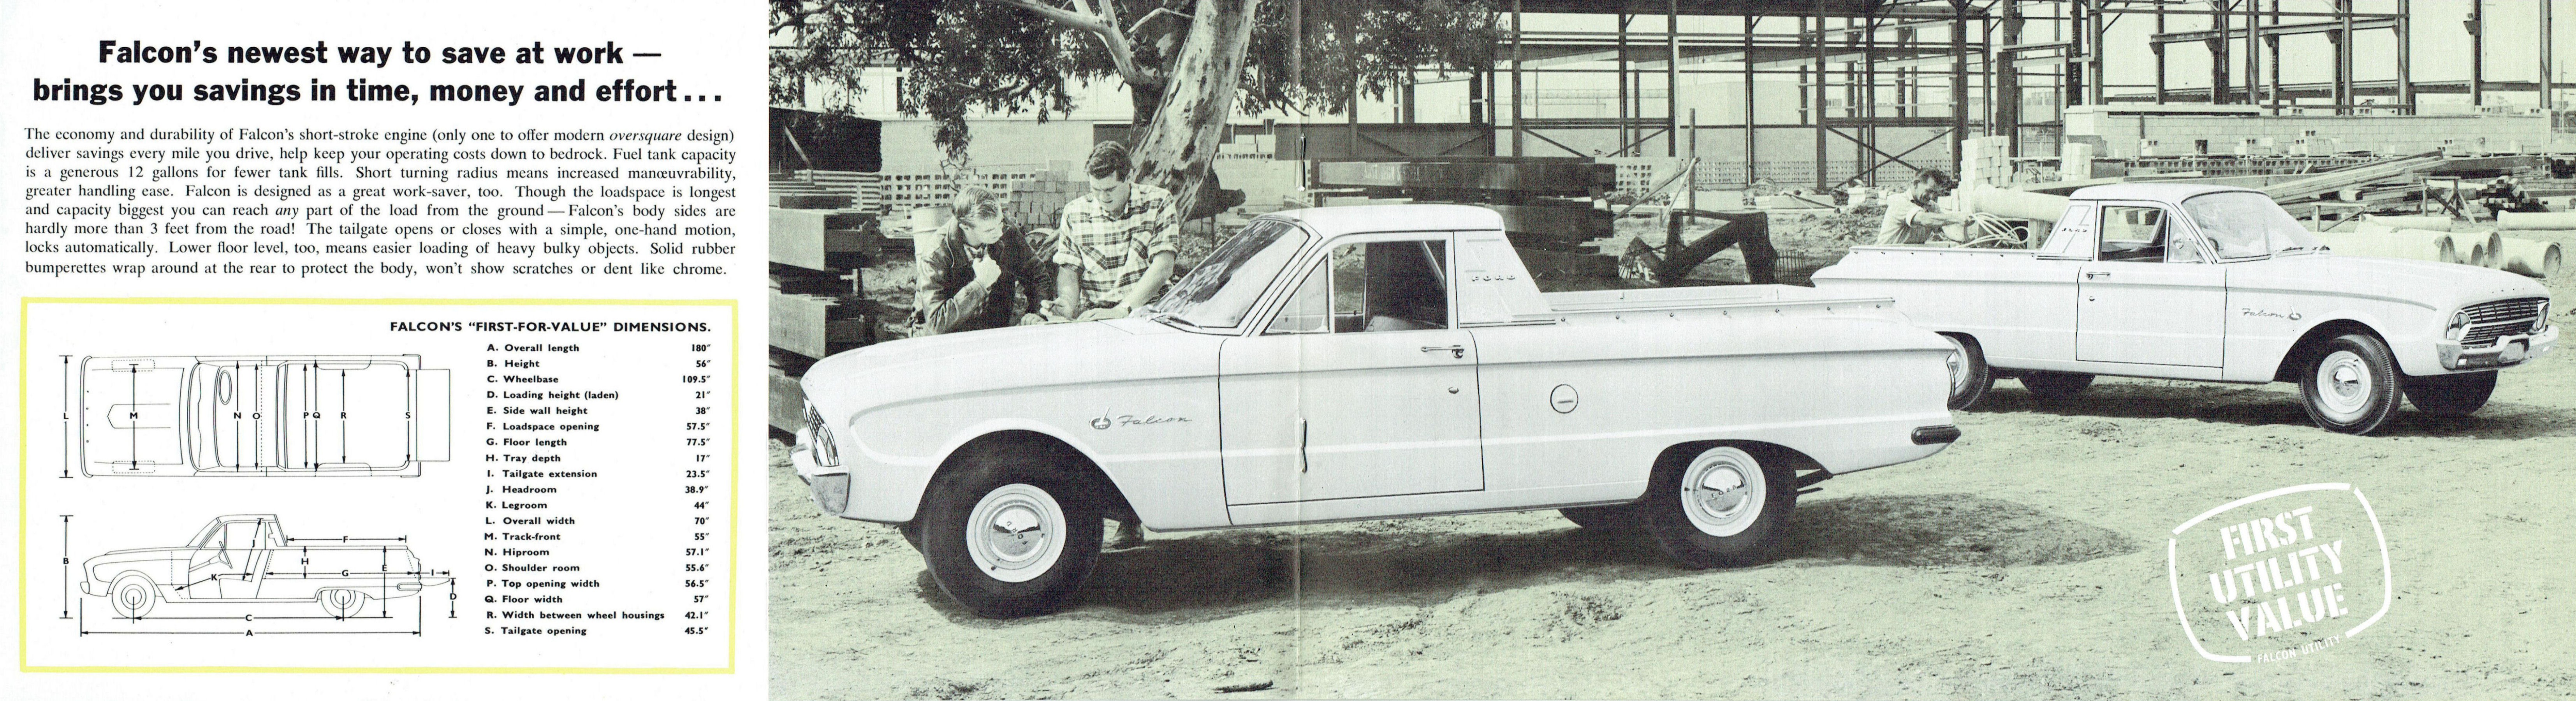 1962 Ford Falcon XL Utility-04-05